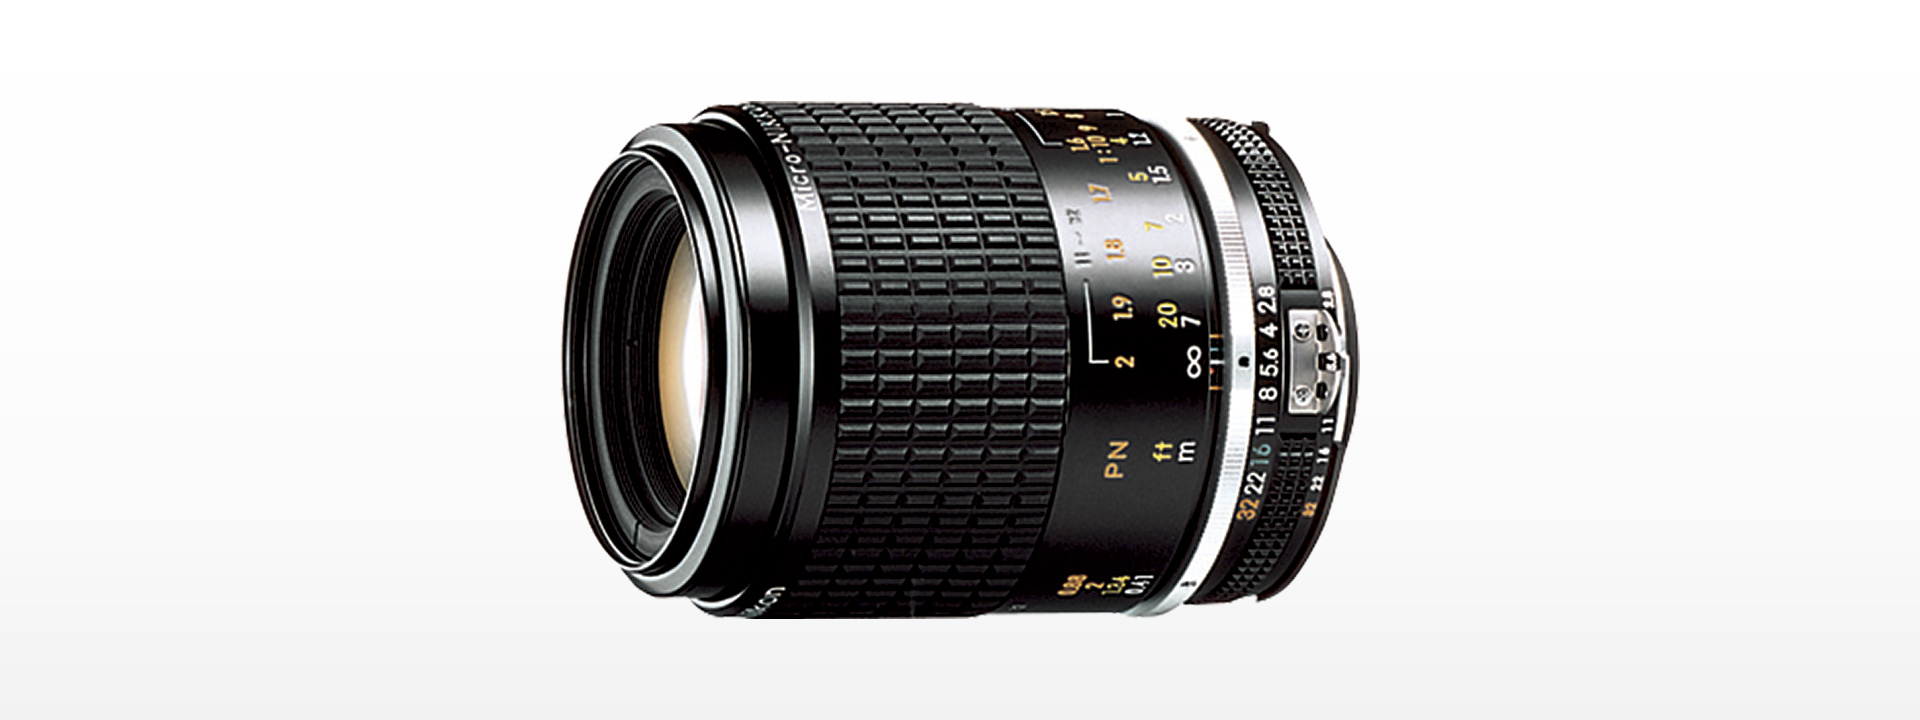 ニコン Nikon Ai-s Micro Nikkor 105mm F/2.8